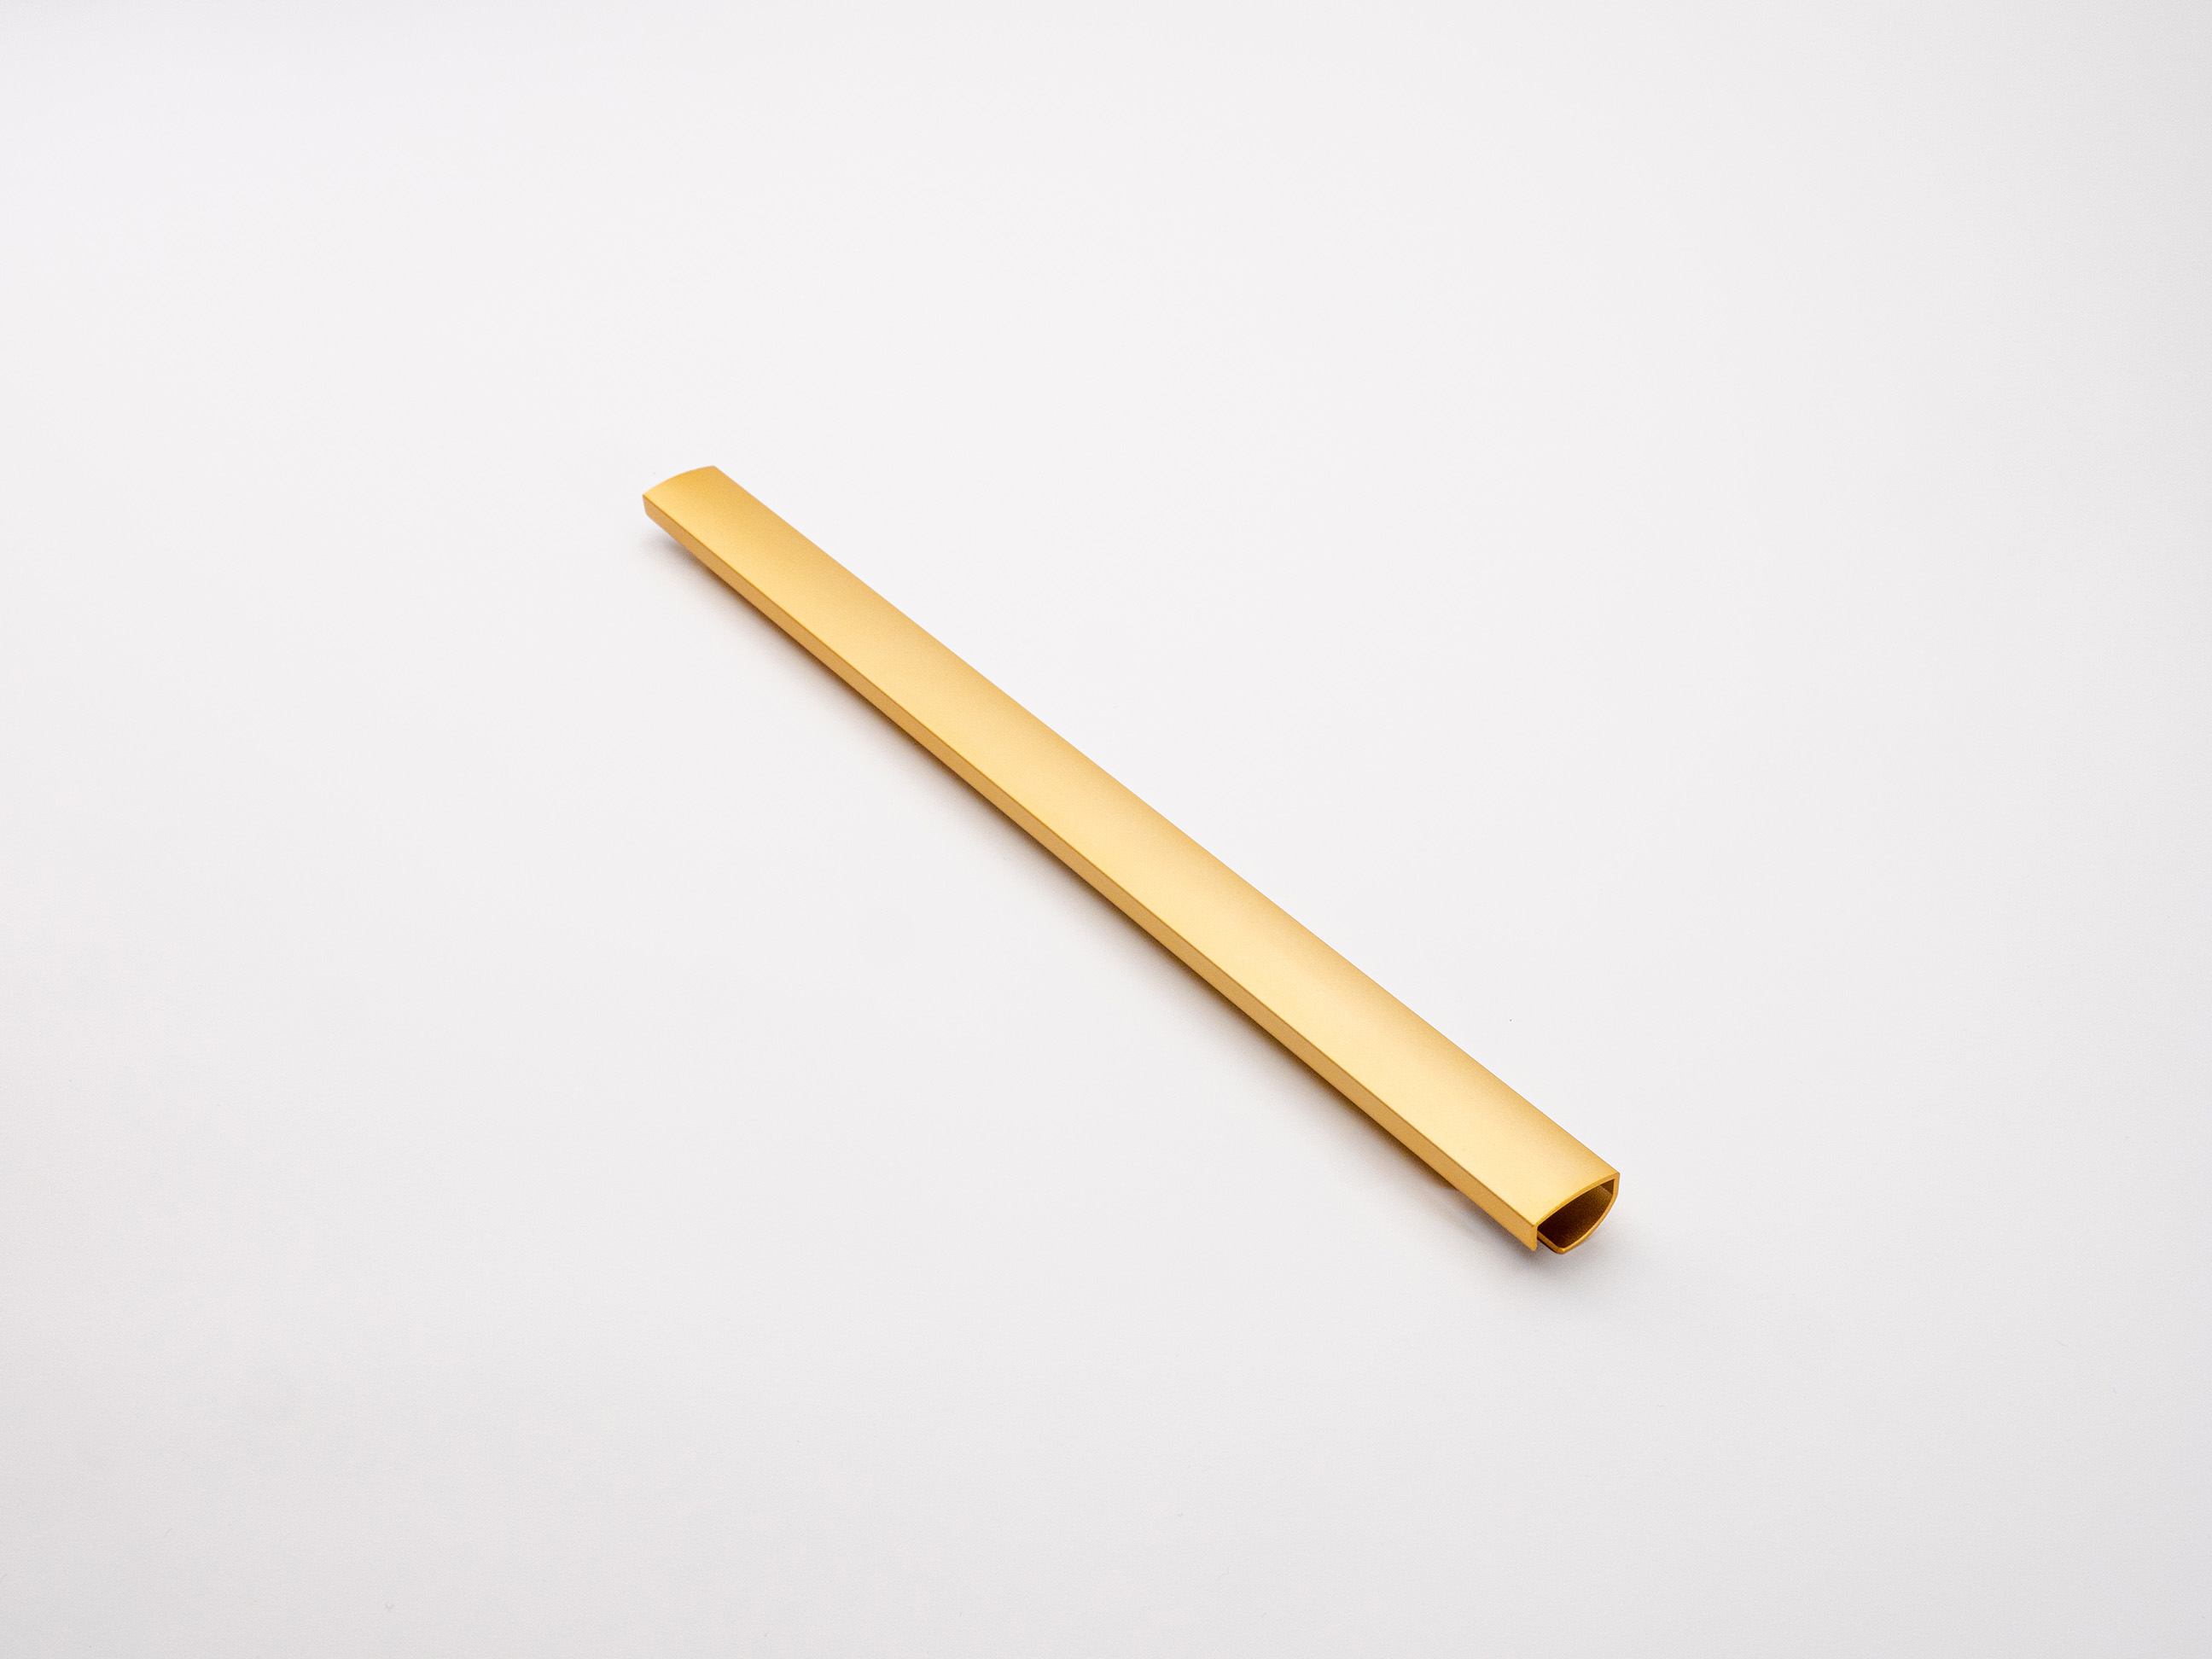 Tubular refrigerator handle - Sandblasted Anodized Gold